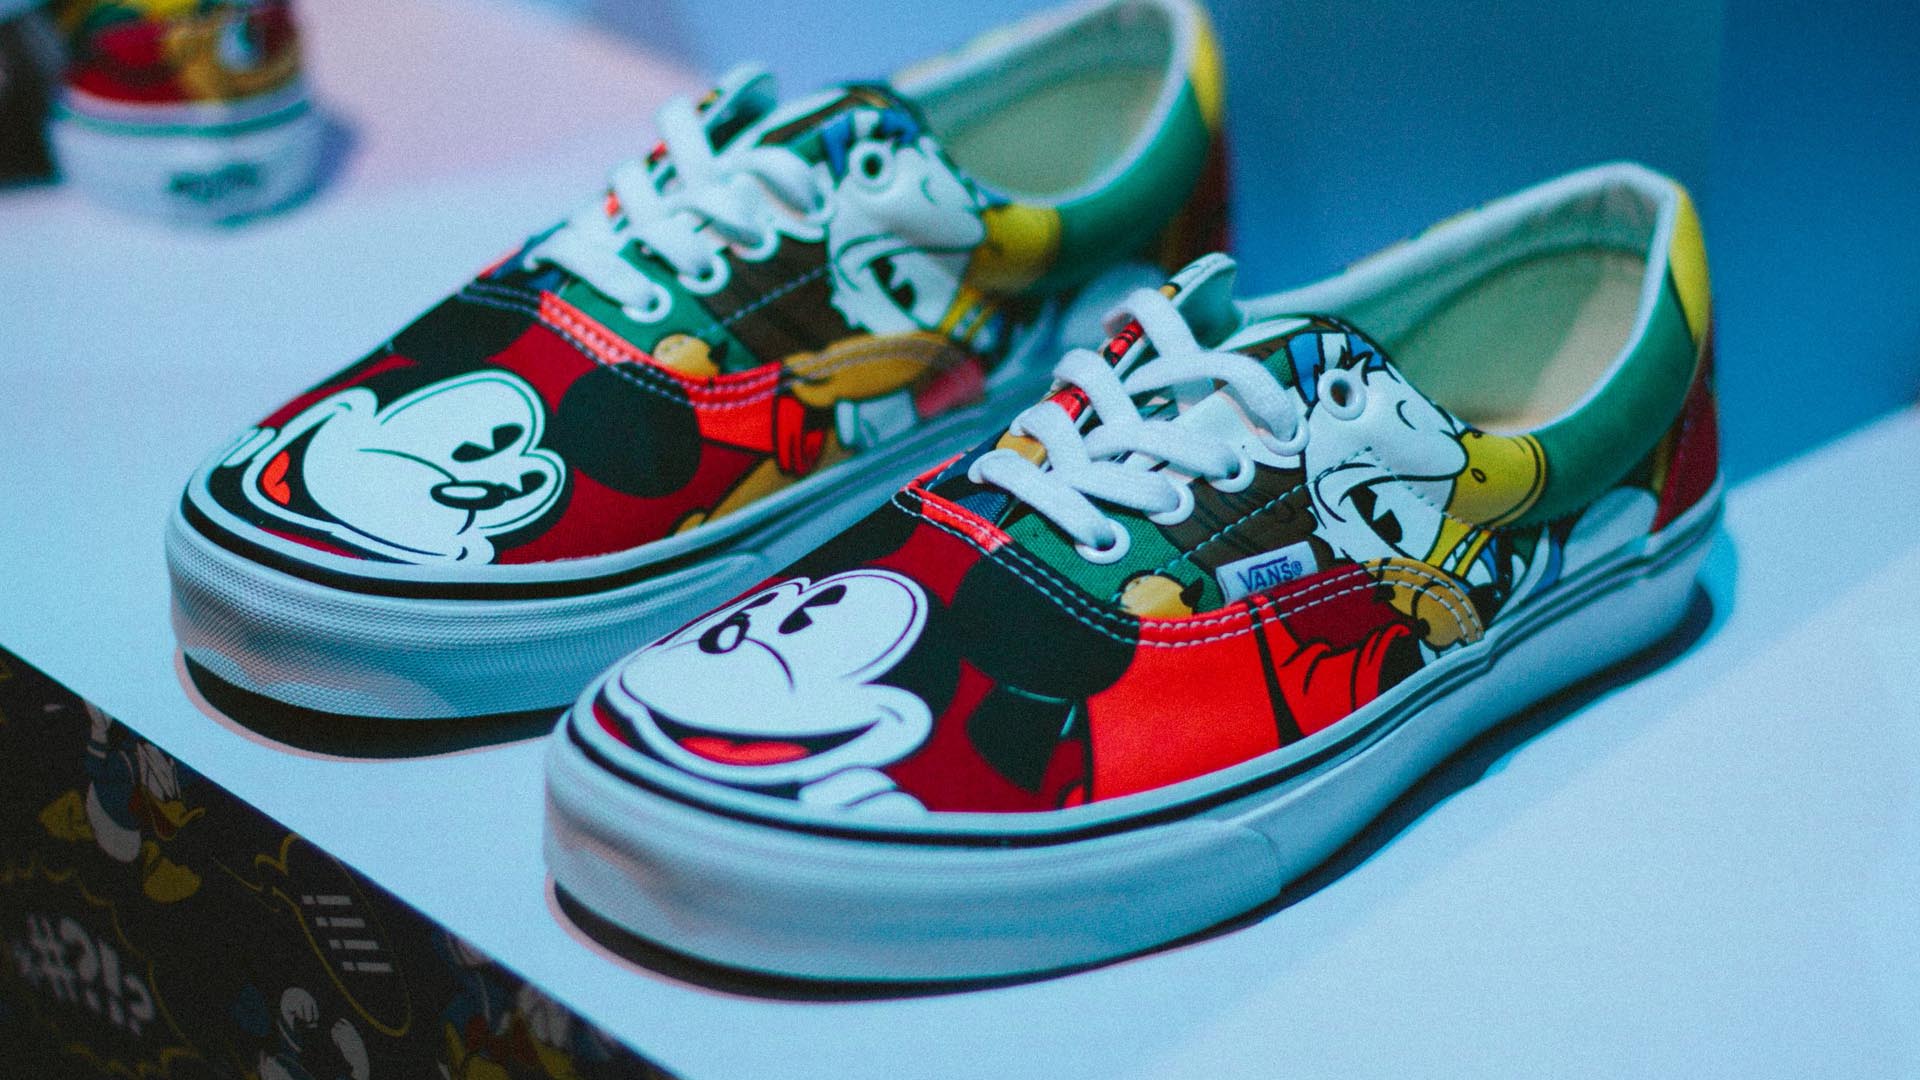 La marca sacará una línea de zapatos, ropa y accesorios inspirados en Toy Story